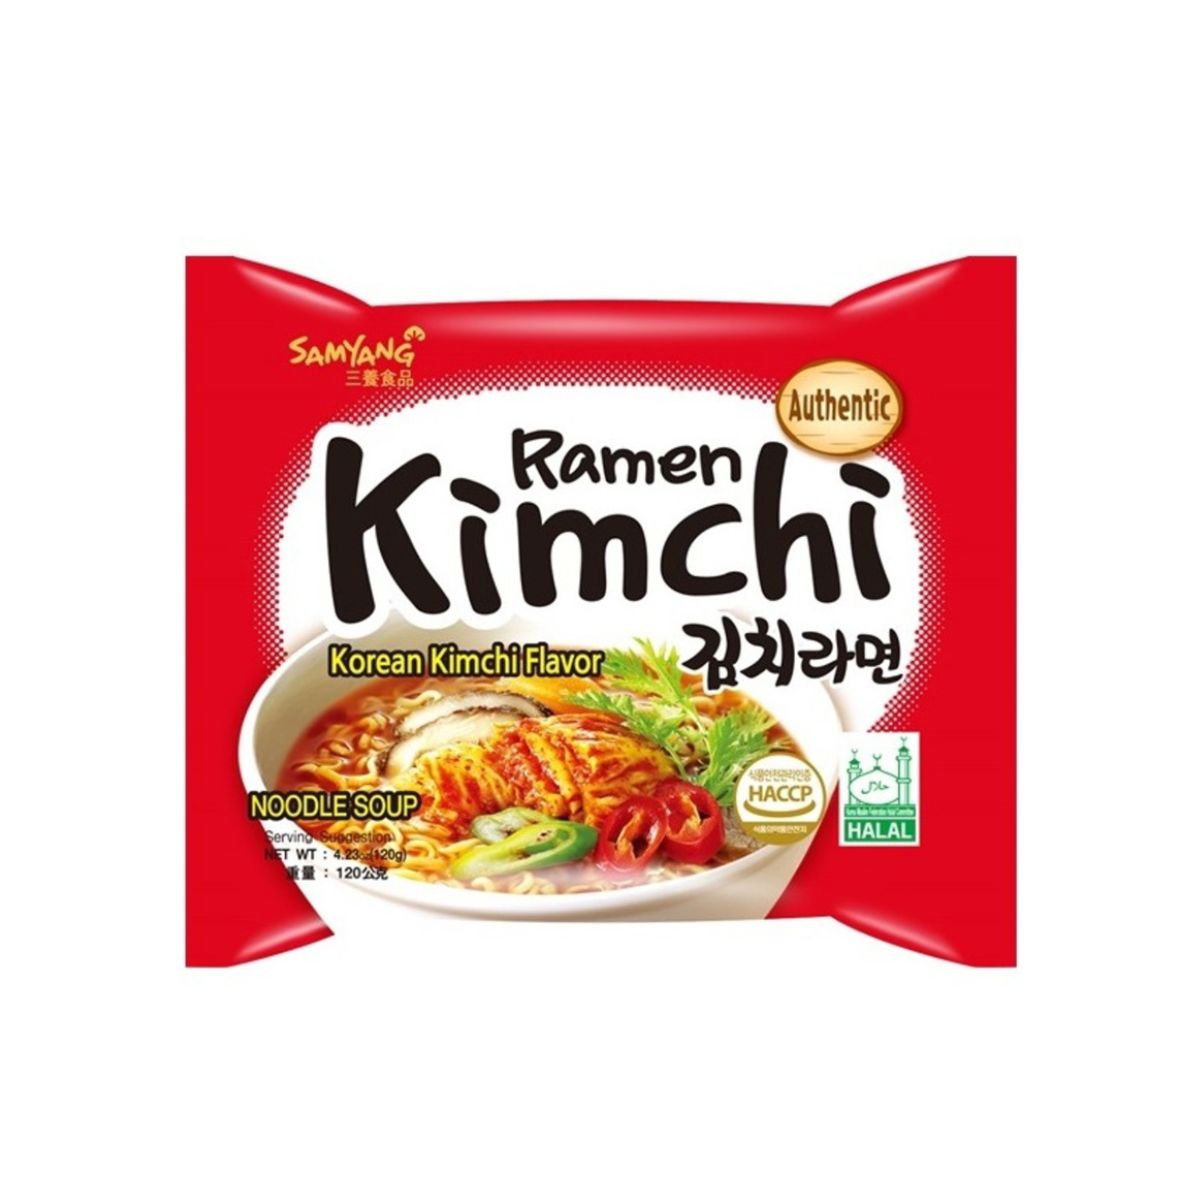 Samyang Ramen Kimchi - Korean Kimchi Flavor - Authentic - 120g